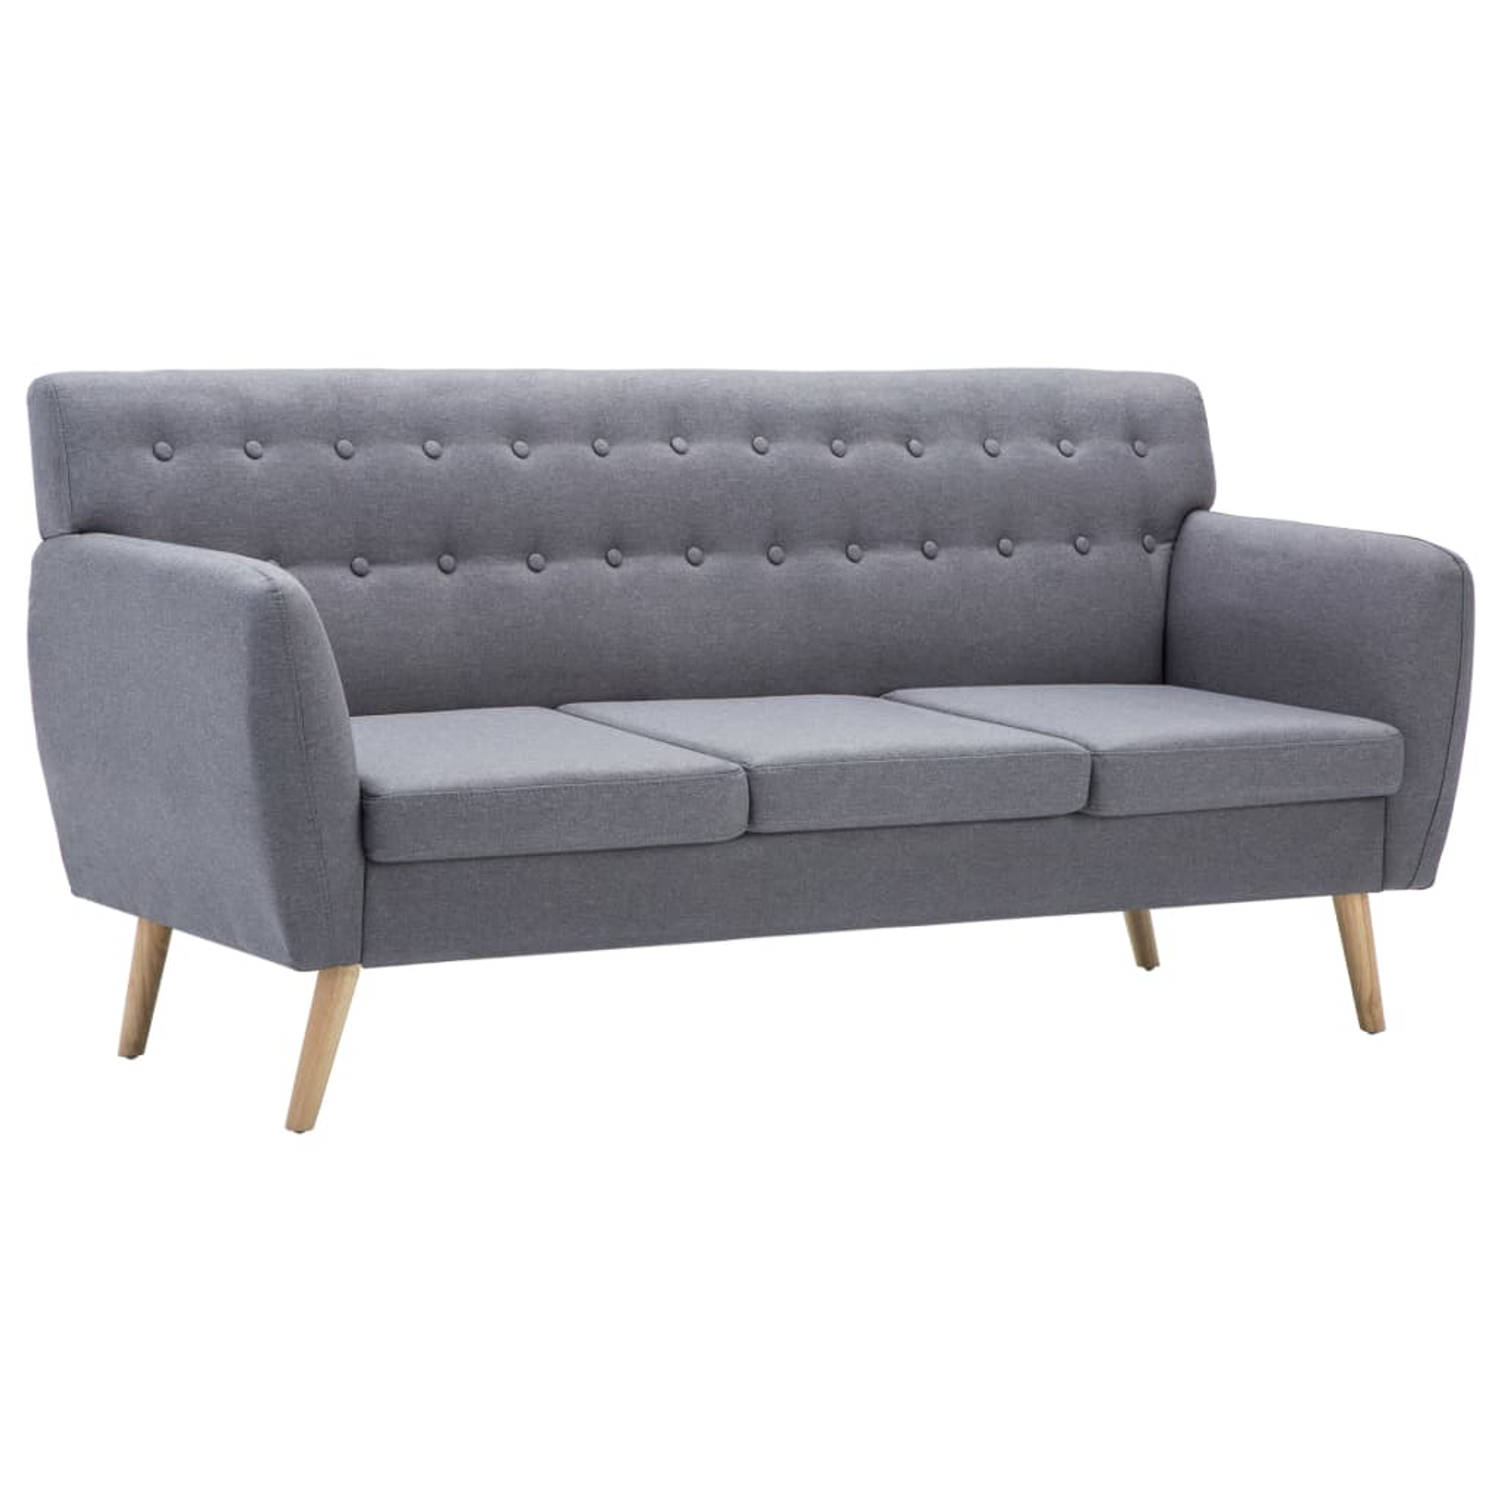 The Living Store 3-zitsbank - lichtgrijs - 172 x 70 x 82 cm - Stijlvolle en comfortabele sofa